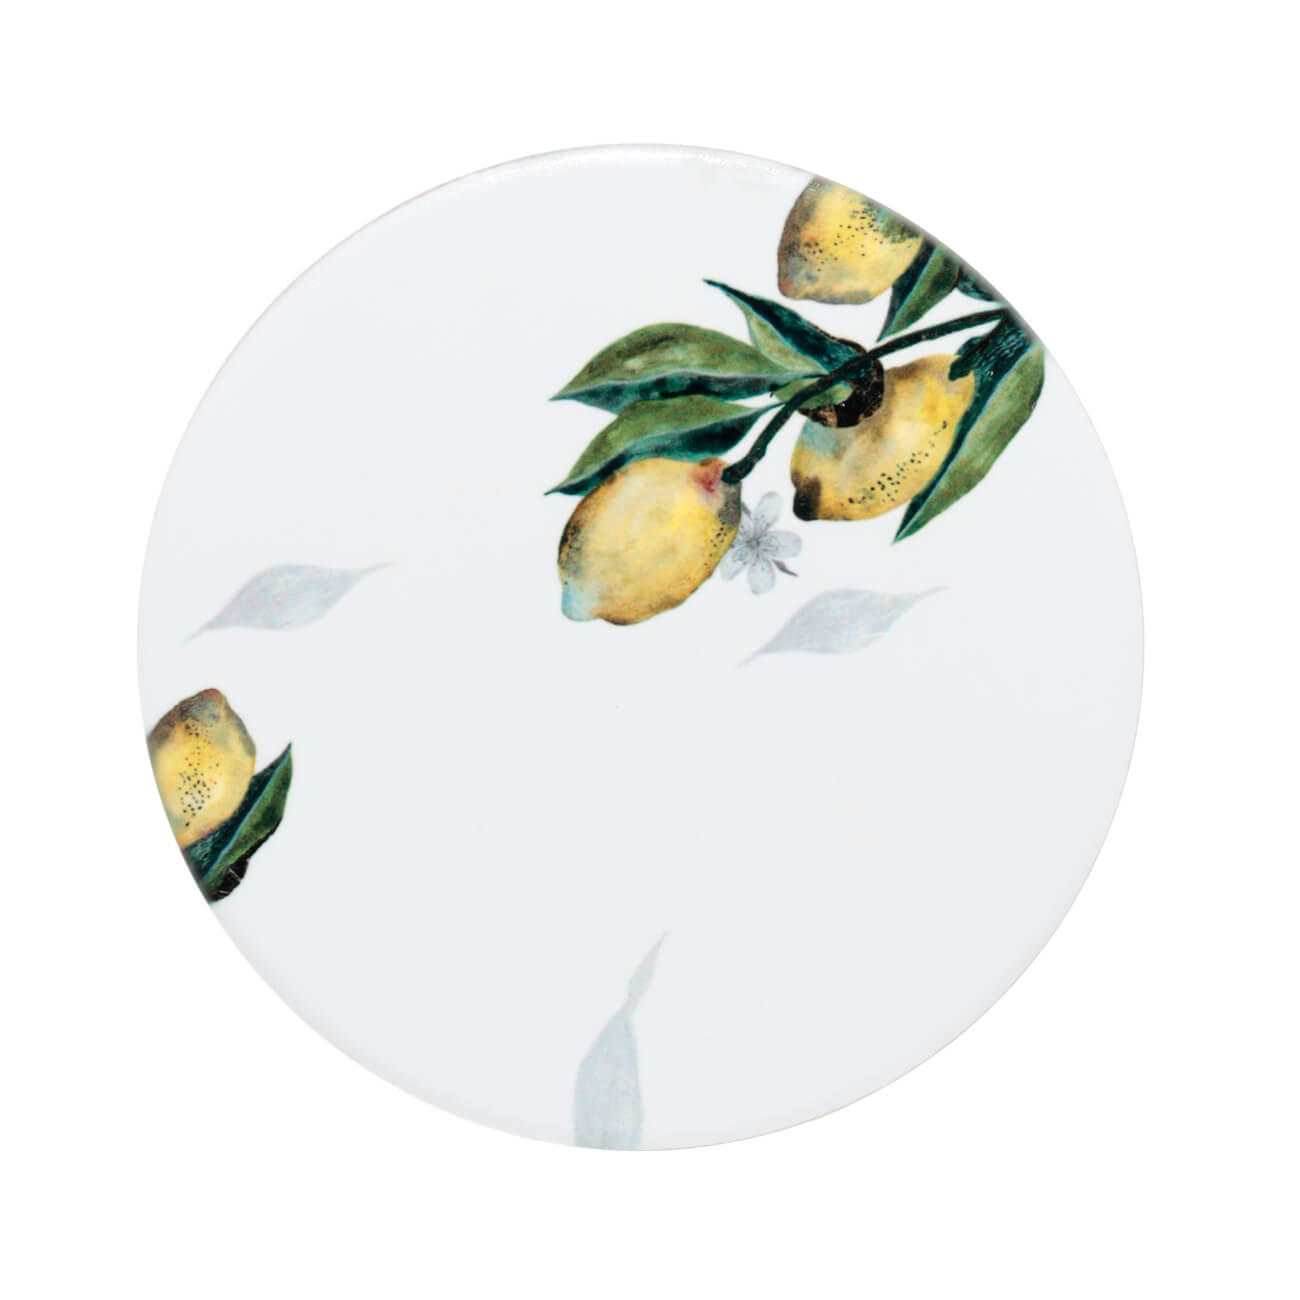 подставка под кружку 11 см керамика пробка круглая белая акварельные ы senetti Подставка под кружку, 11 см, керамика/пробка, круглая, белая, Лимоны, Sicily in bloom